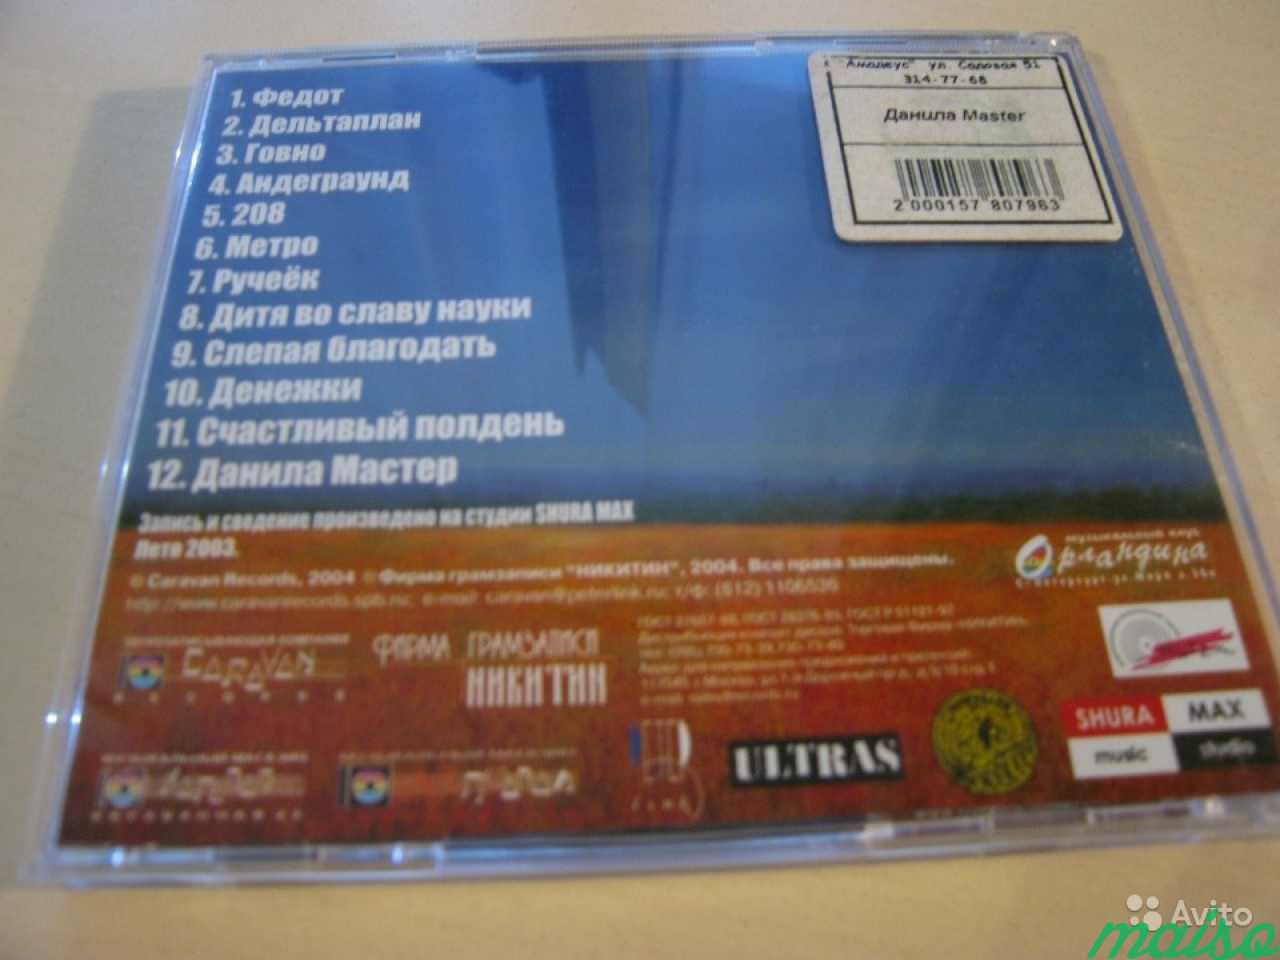 CD диск альбом группы Данила Master в Санкт-Петербурге. Фото 2